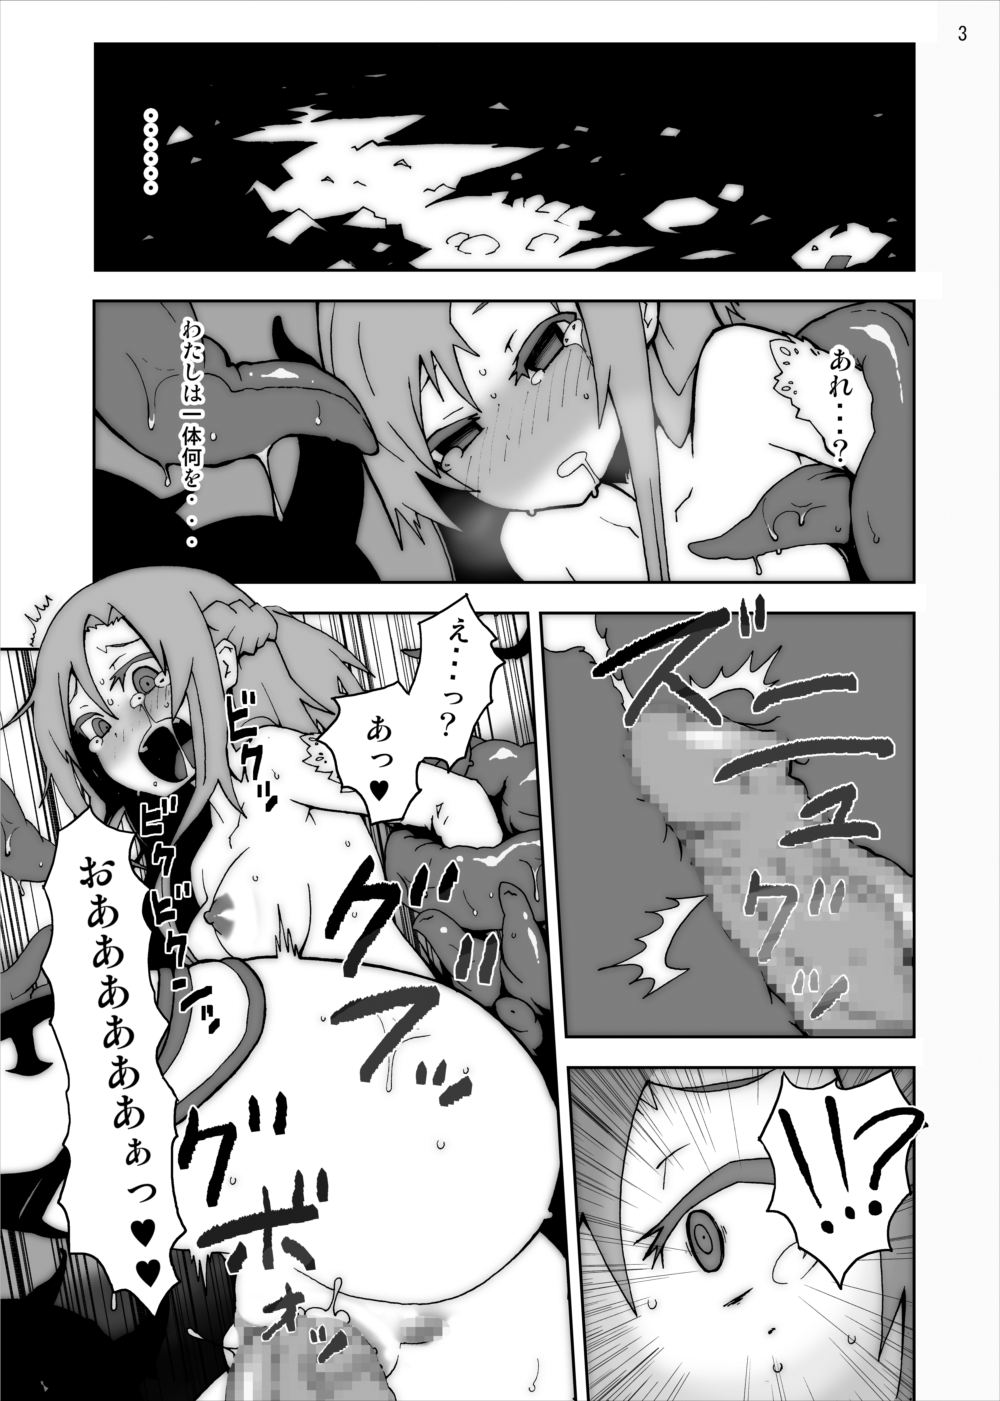 [Studio Nunchaku] Asuna in Tentacle Party Rape Online (Sword Art Online) page 2 full